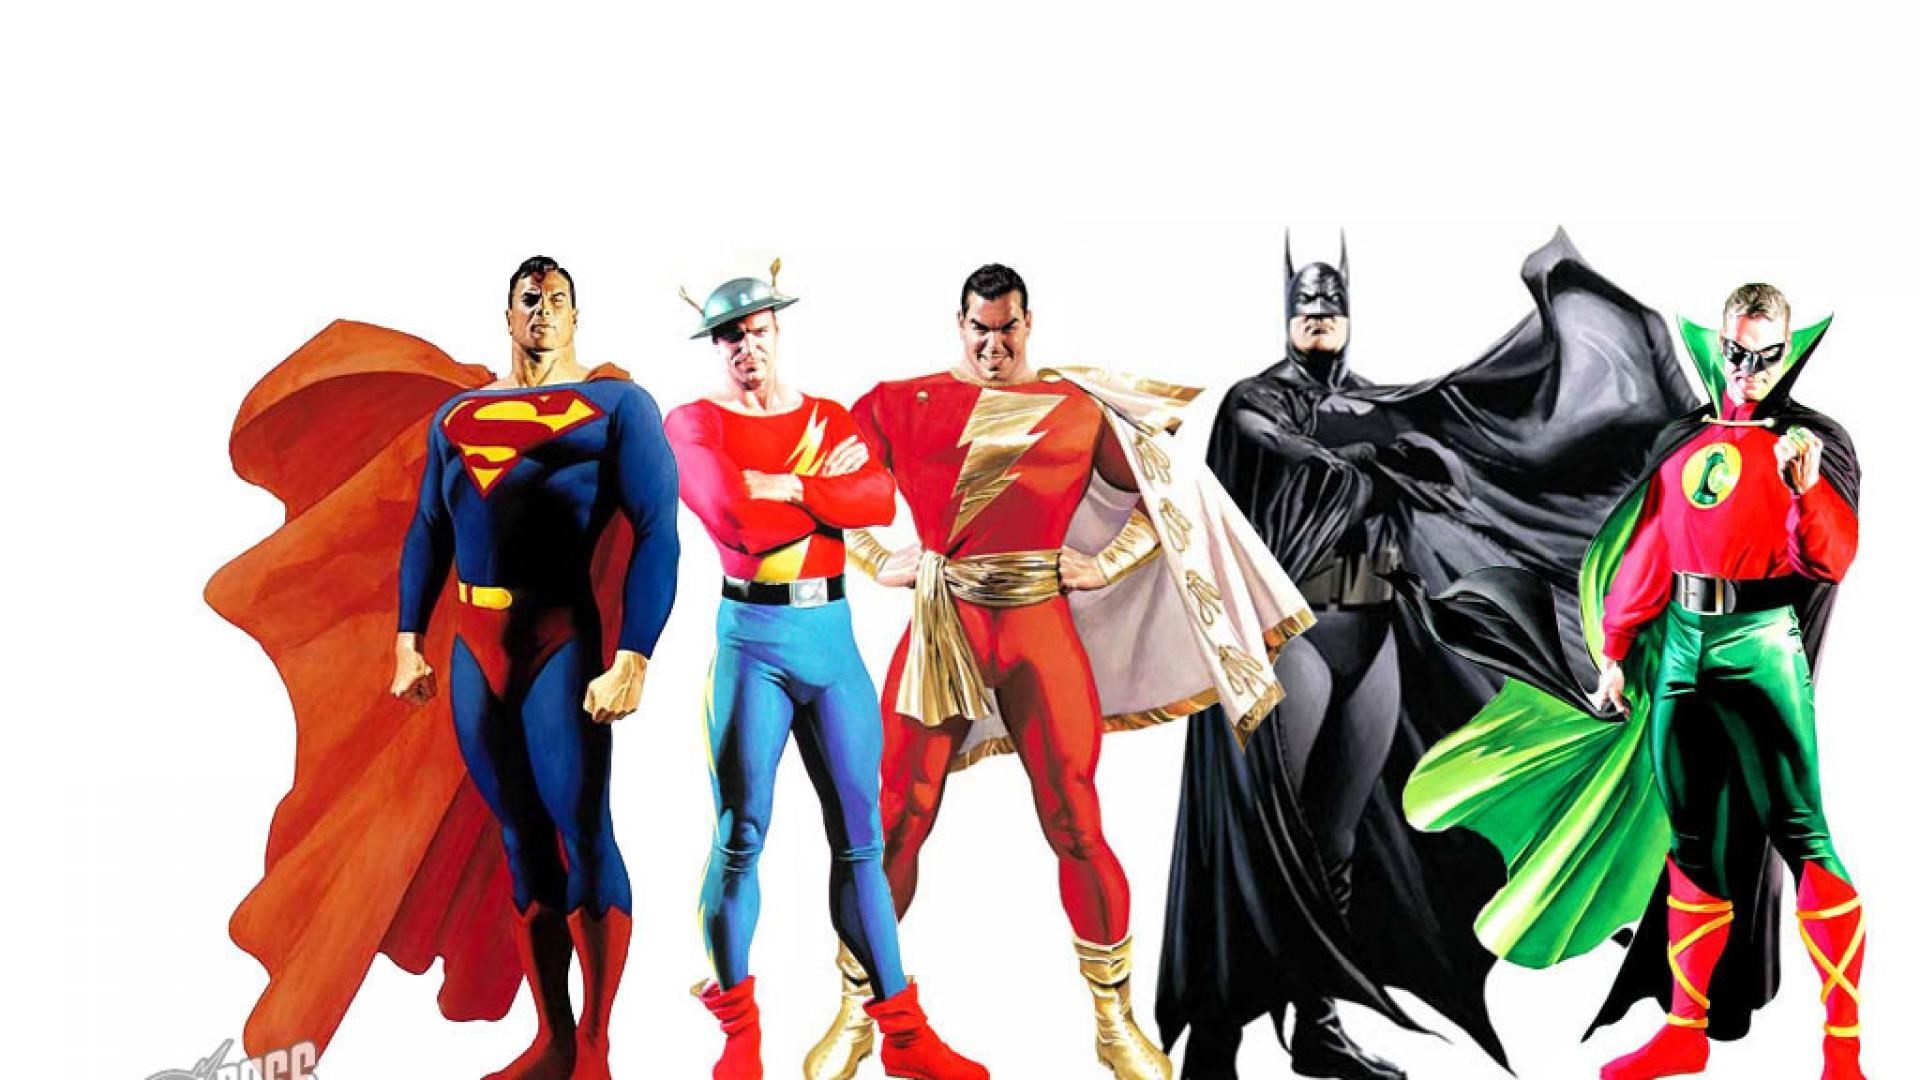 Is super heroes. Лига справедливости Алекс Росс. Алекс Росс супергероини. Коллаж Супергерои. Супергерои мужчины.